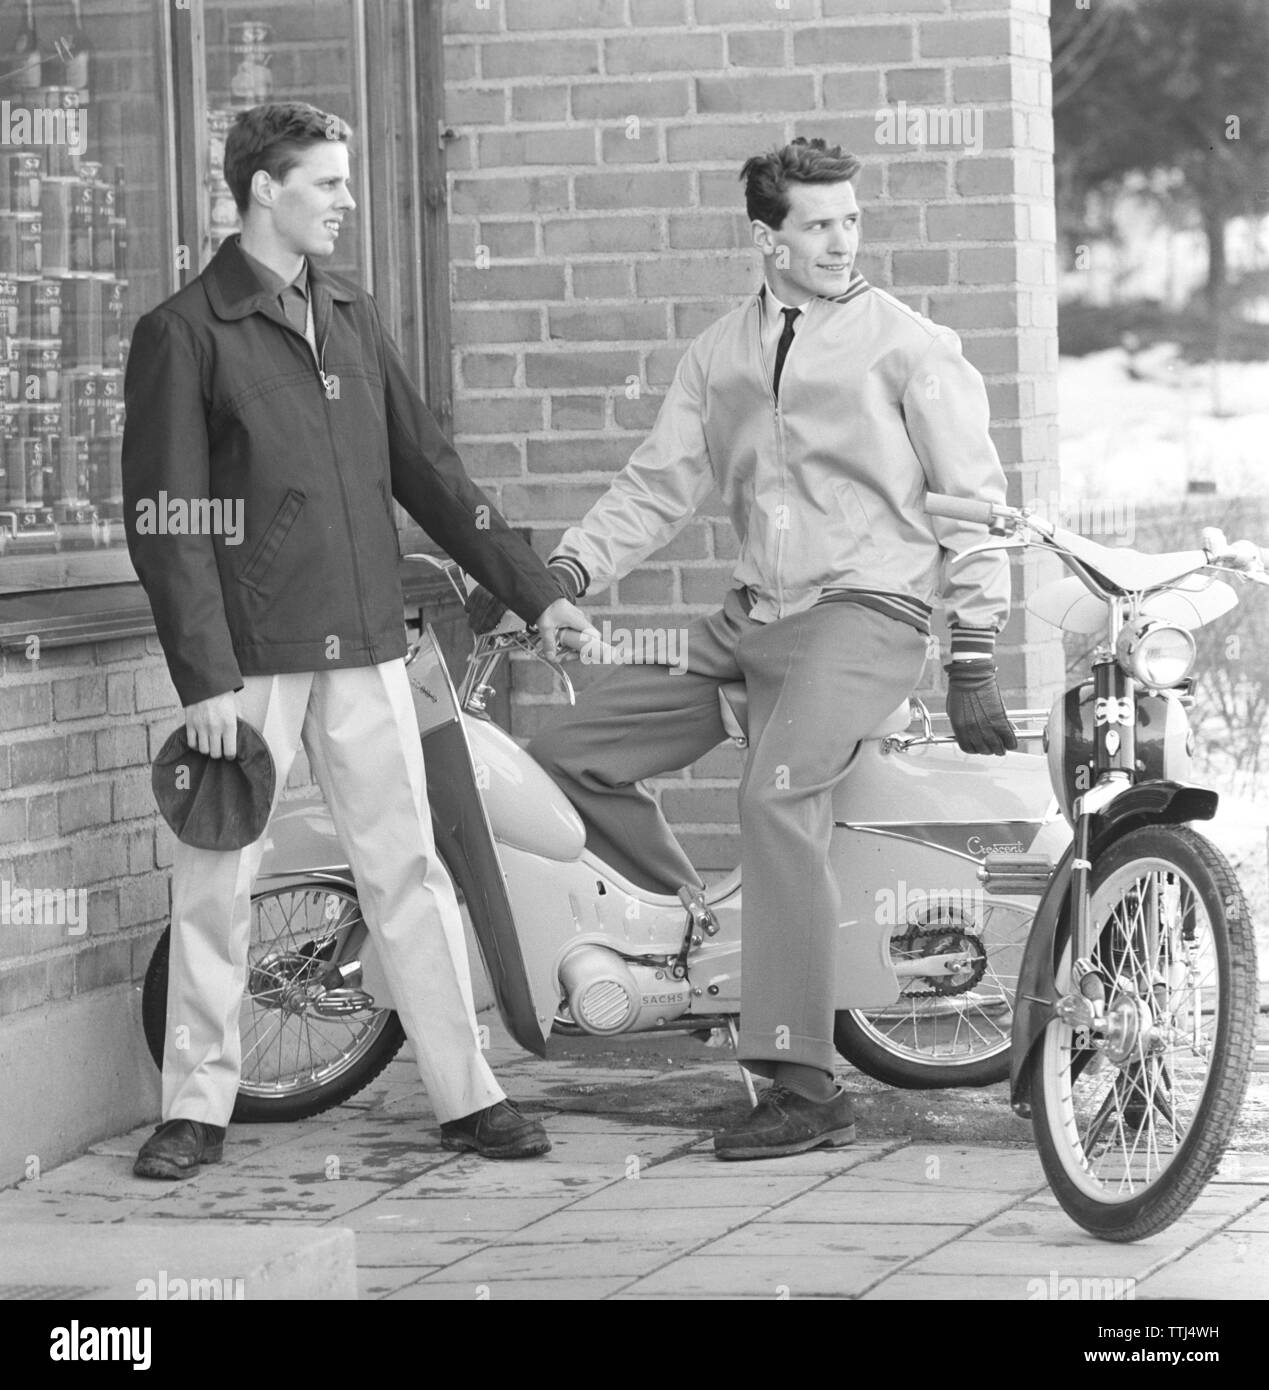 La mode des hommes dans les années 1950. Décrit comme la mode du moteur et convient d'utiliser lors de la conduite des cyclomoteurs et motos. Pantalons et vestes durables. Fevrier 1959 Suède Banque D'Images